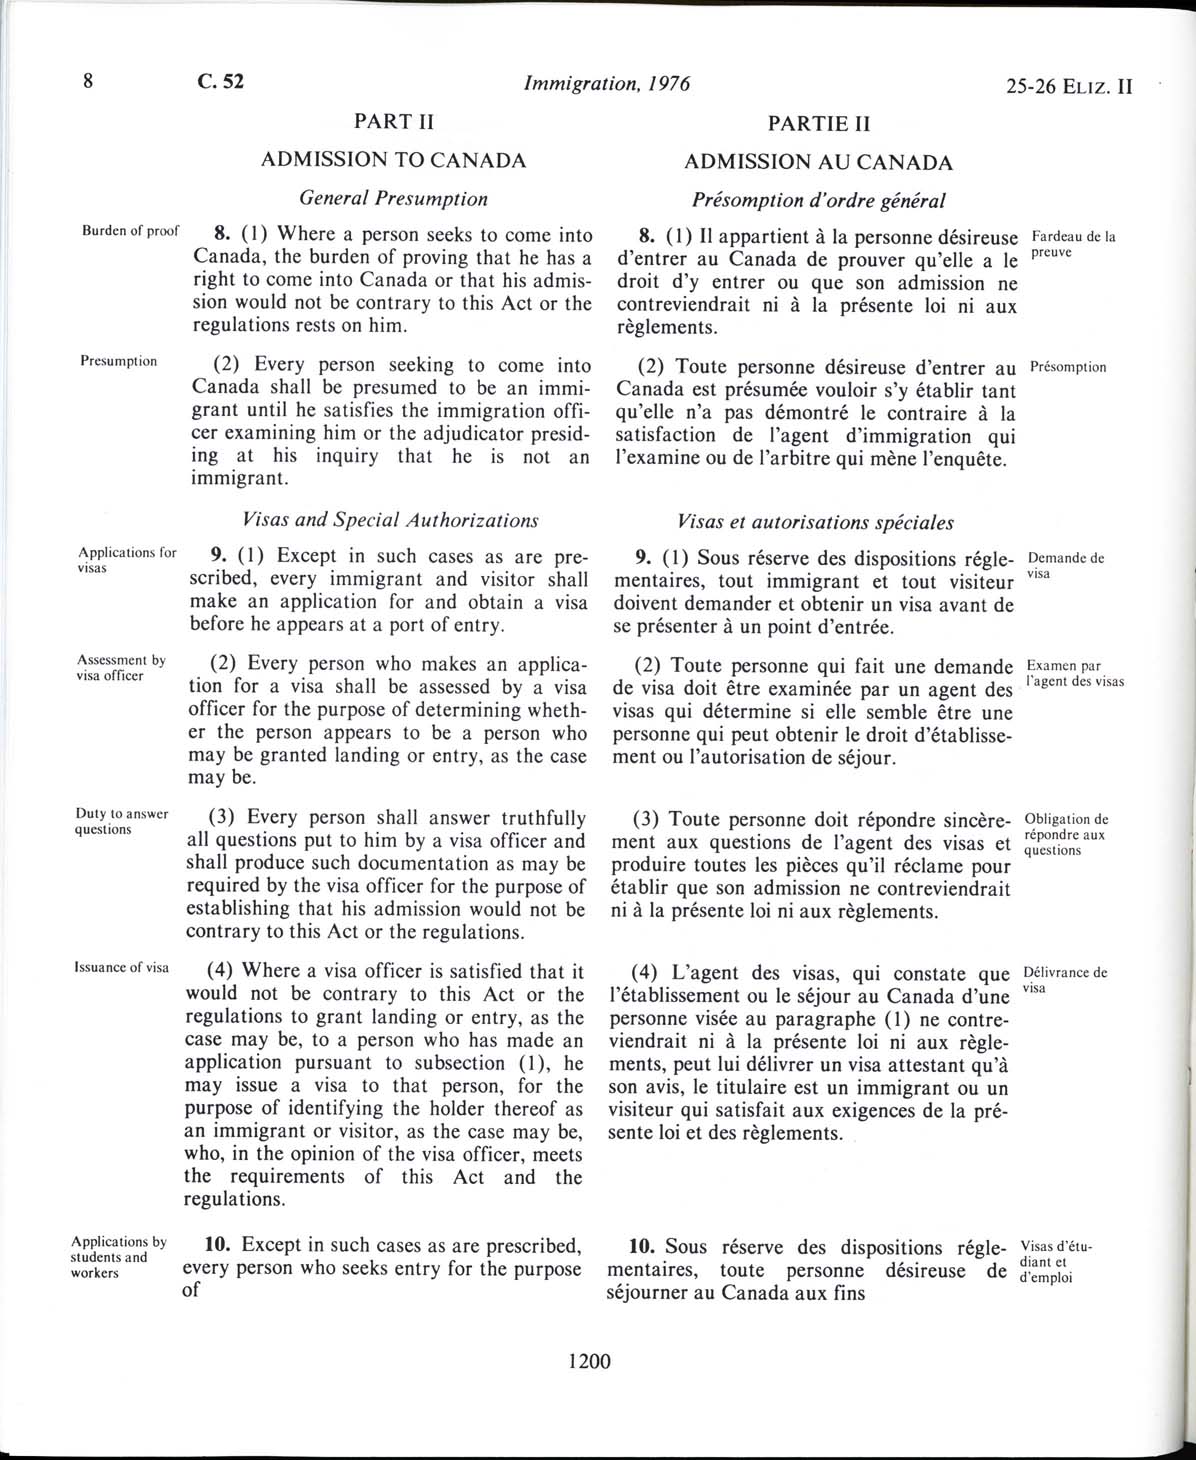 Page 1200 Loi sur l’immigration de 1976